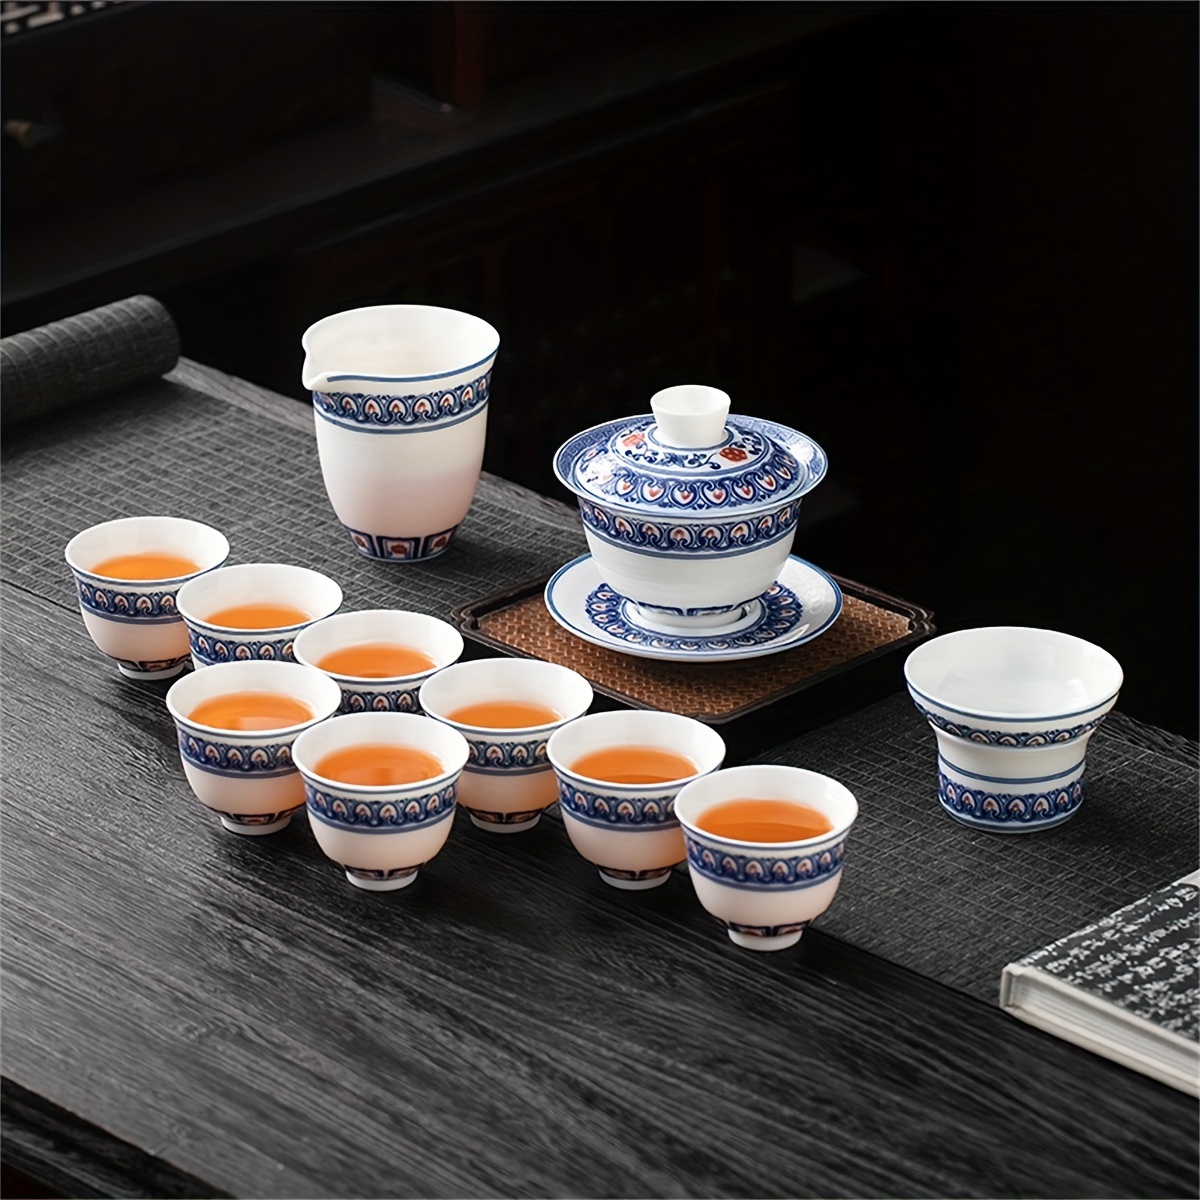 Antiguo juego de té Chino